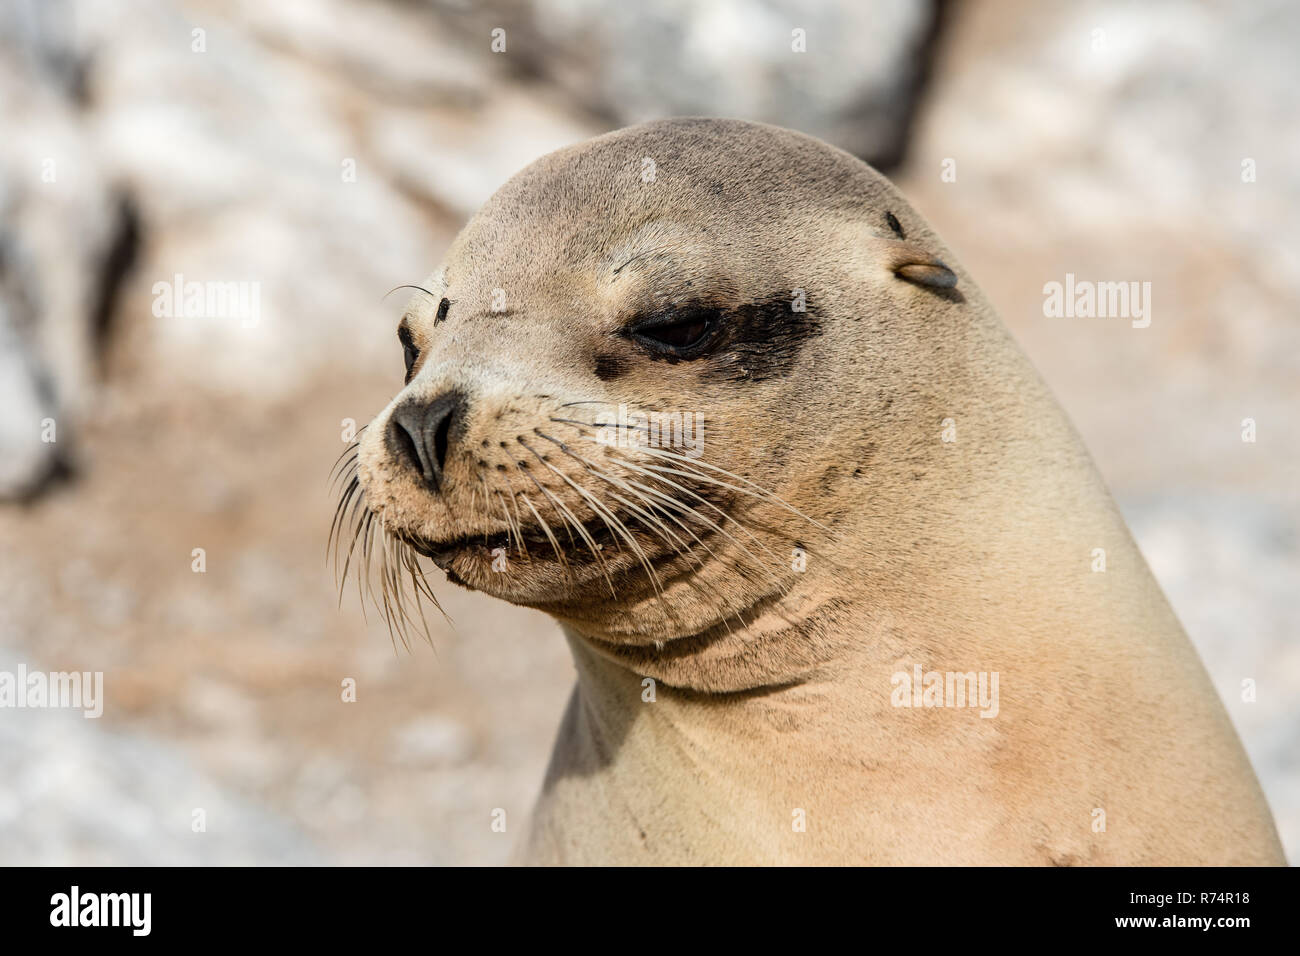 Close-up de una hembra de lobo de mar Foto de stock